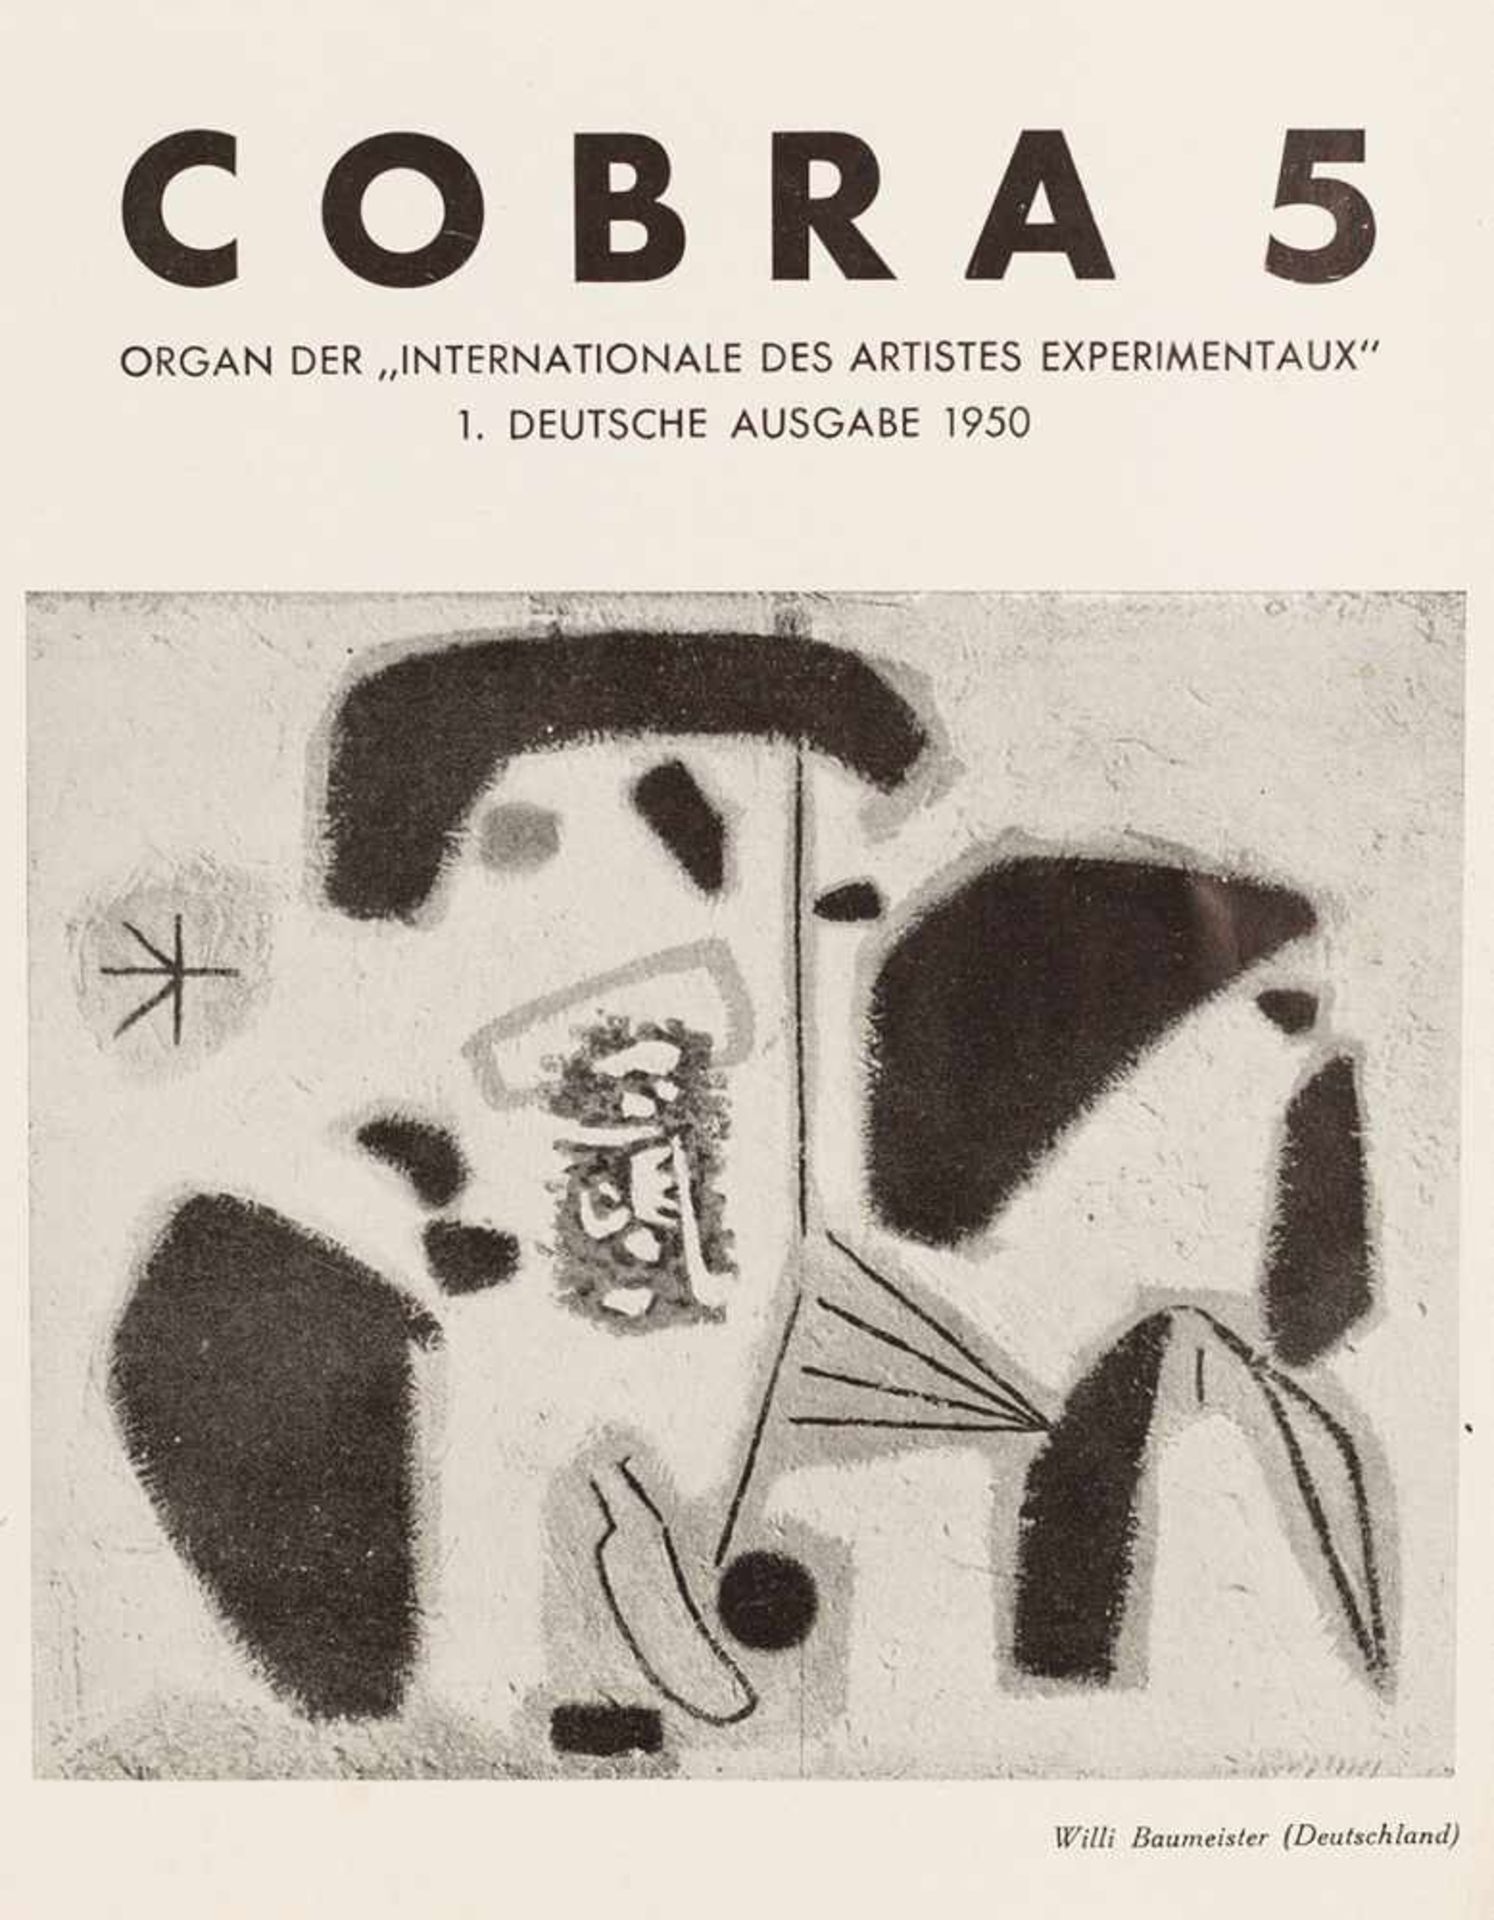 COBRA 5.Internationale Zeitschrift für moderne Kunst. Organ der »Internationale des Artistes